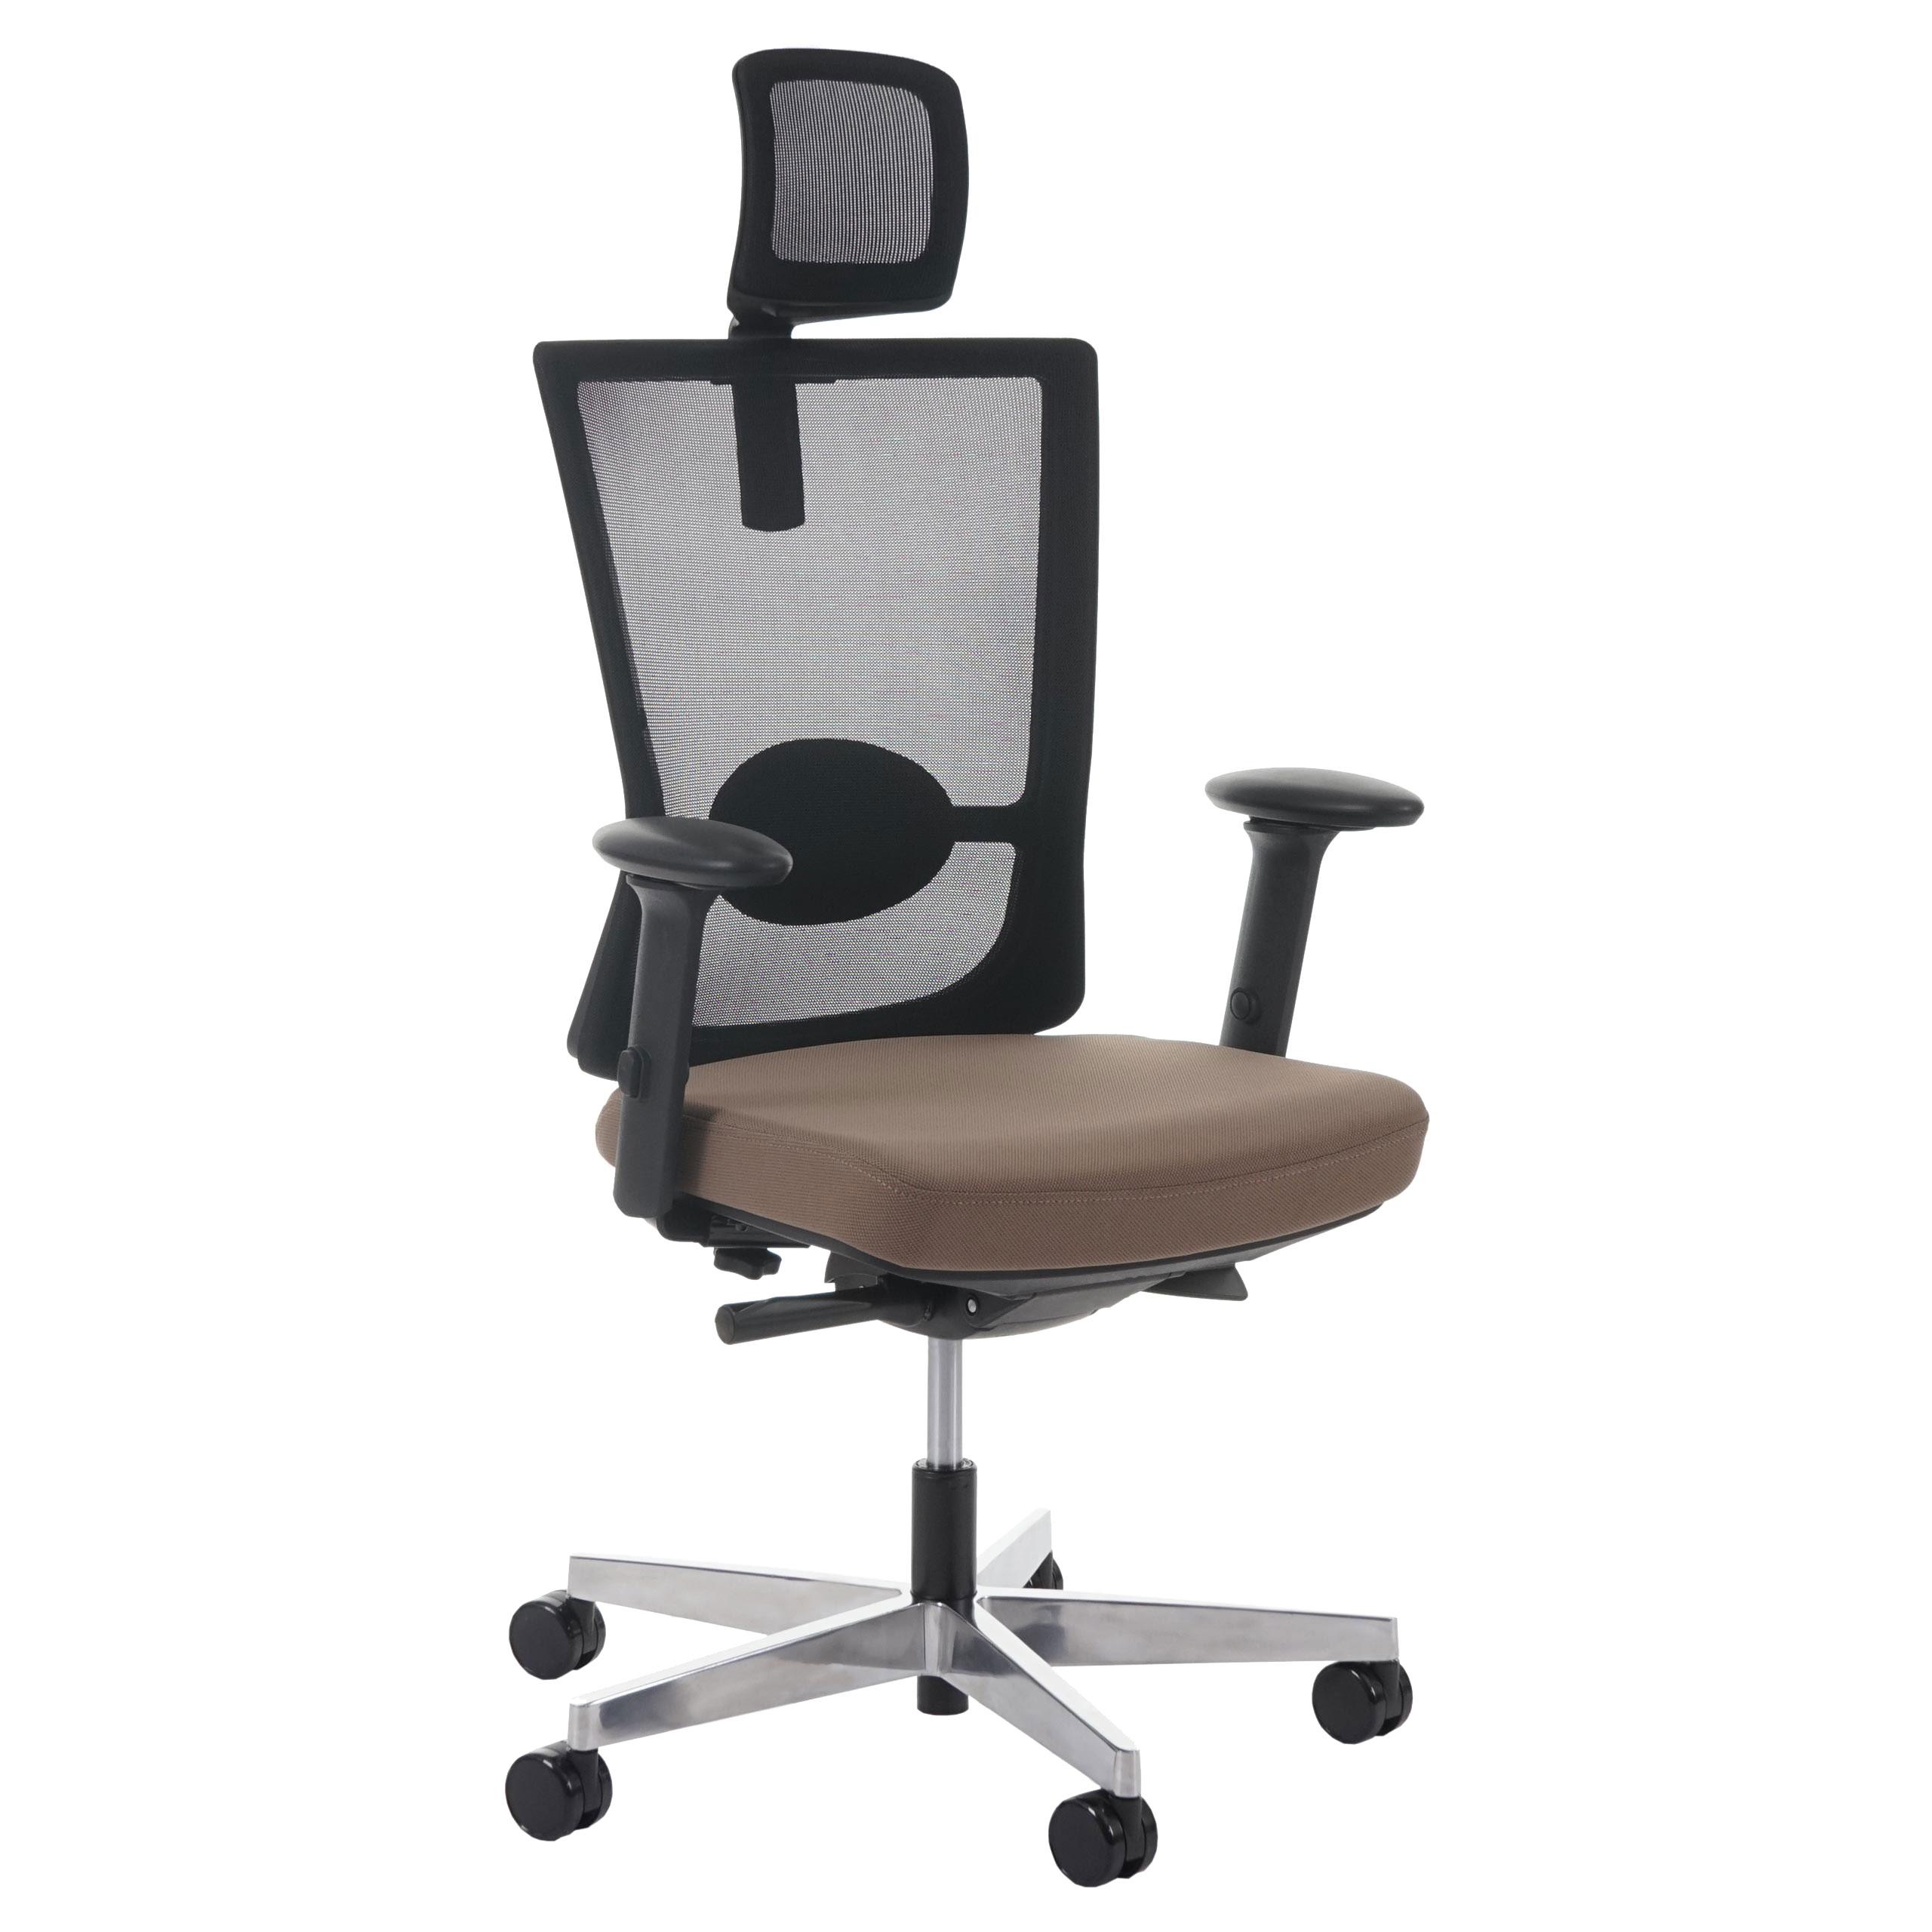 Chaise ergonomique NIL PRO, 100% Ajustable, Excellente Qualité, Utilisation 8 heures, Marron